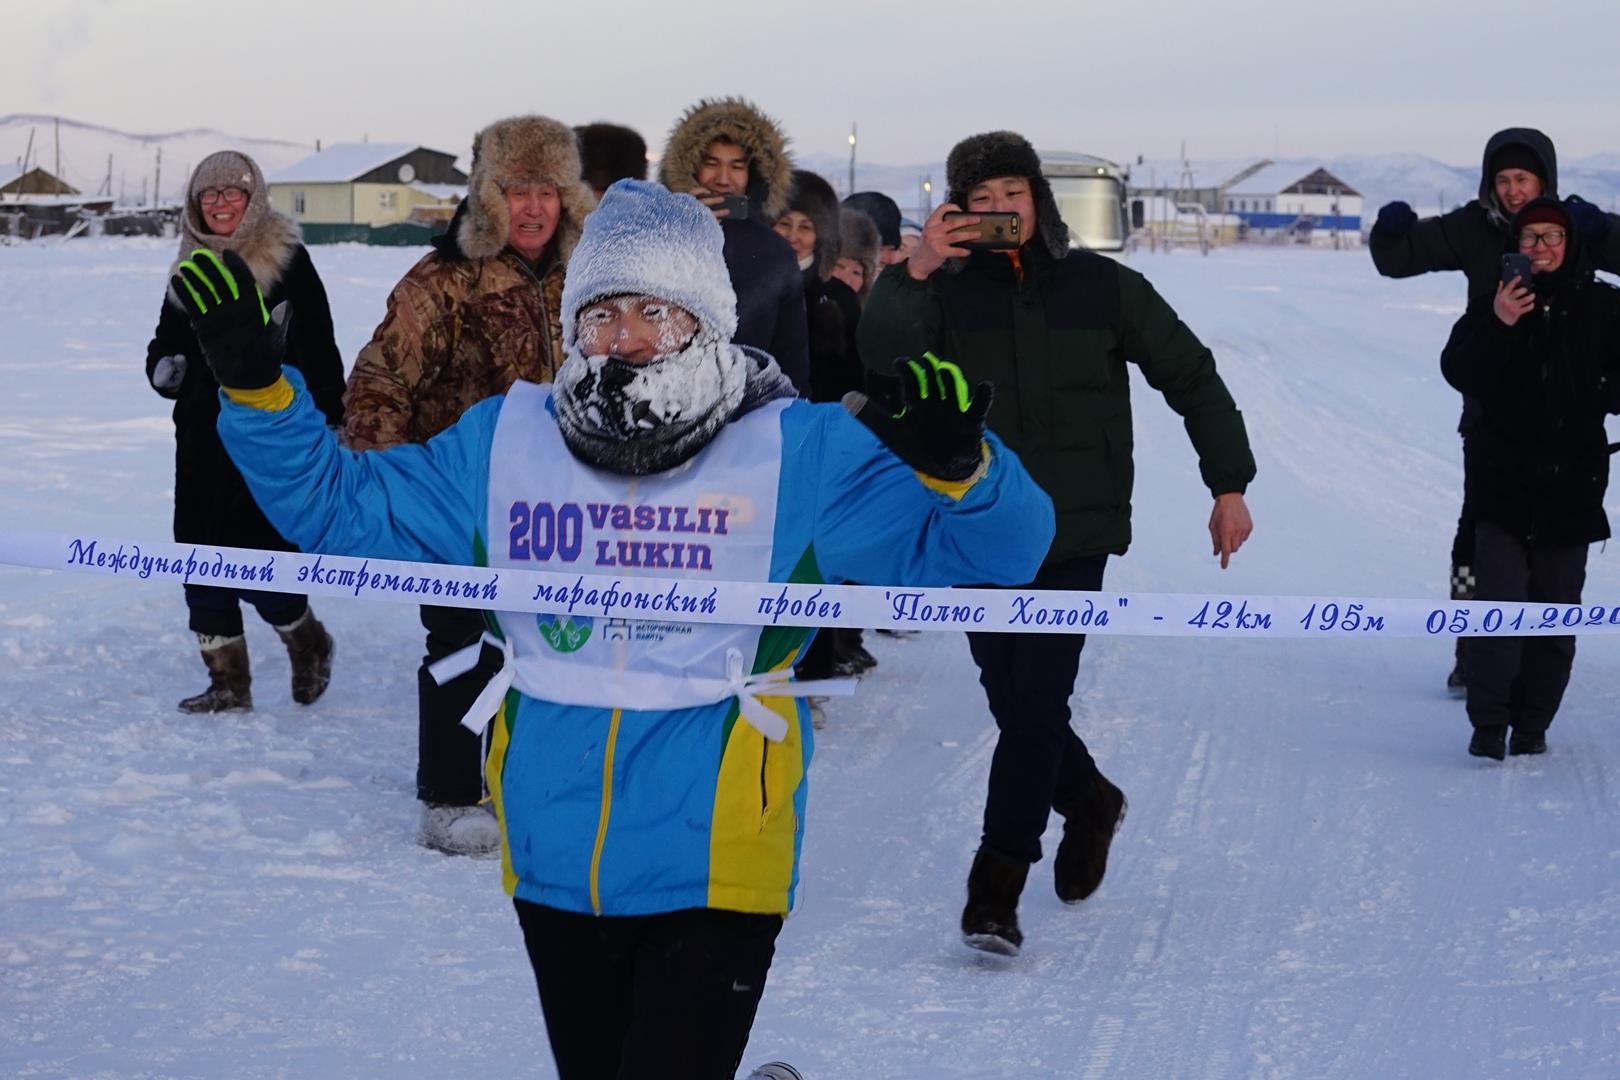 Испытание выдержали. Определили победителей экстремального марафона «Полюс холода» в Якутии